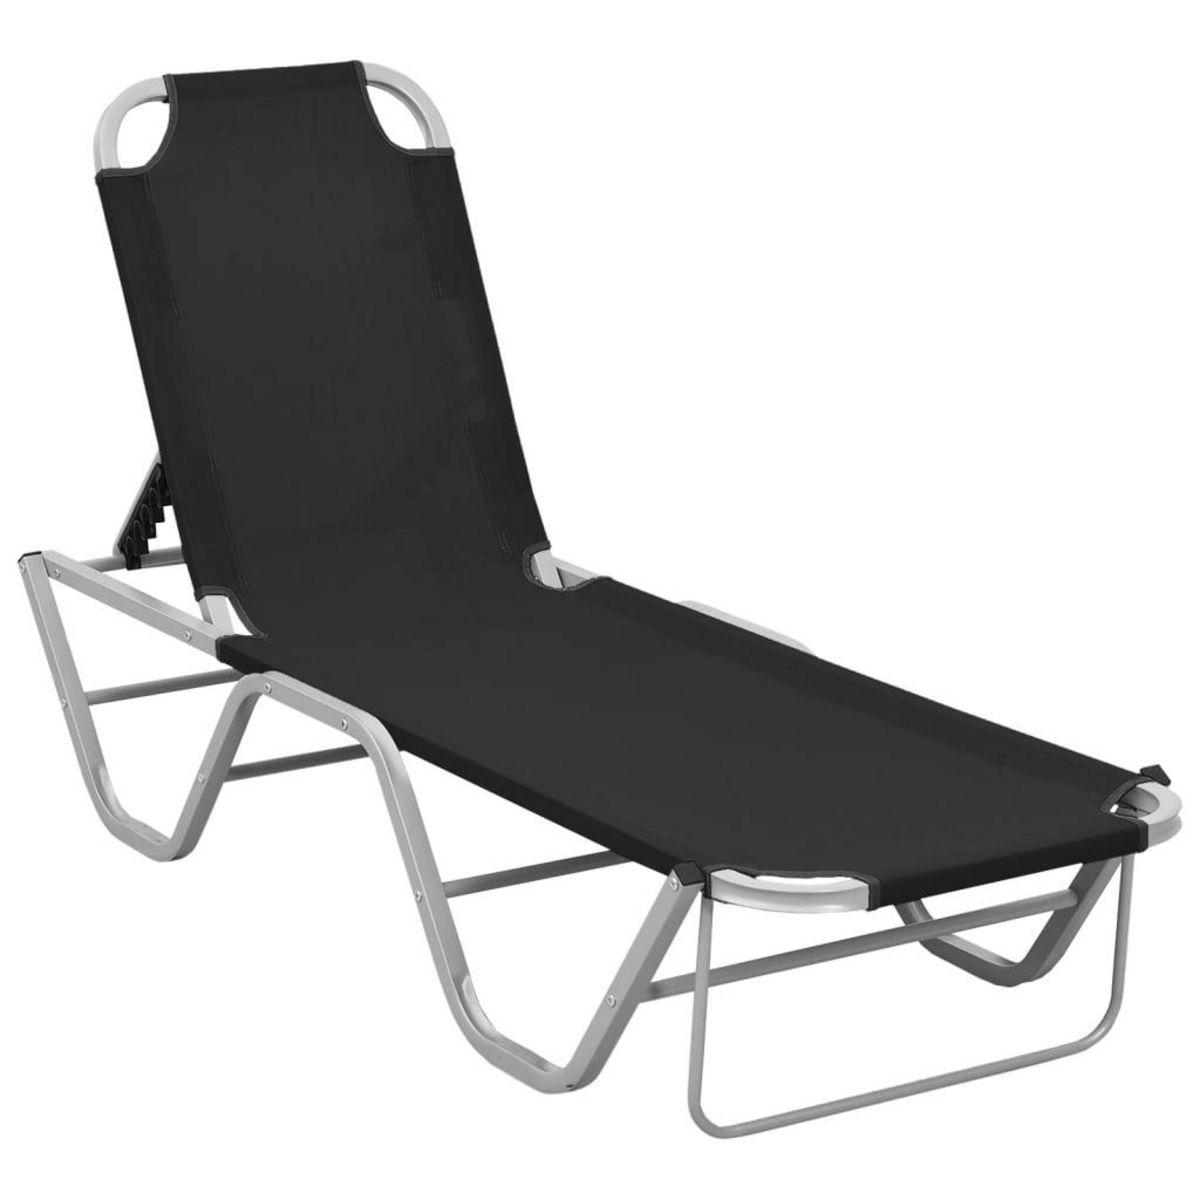 VIDAXL Chaise longue Aluminium et textilene Noir